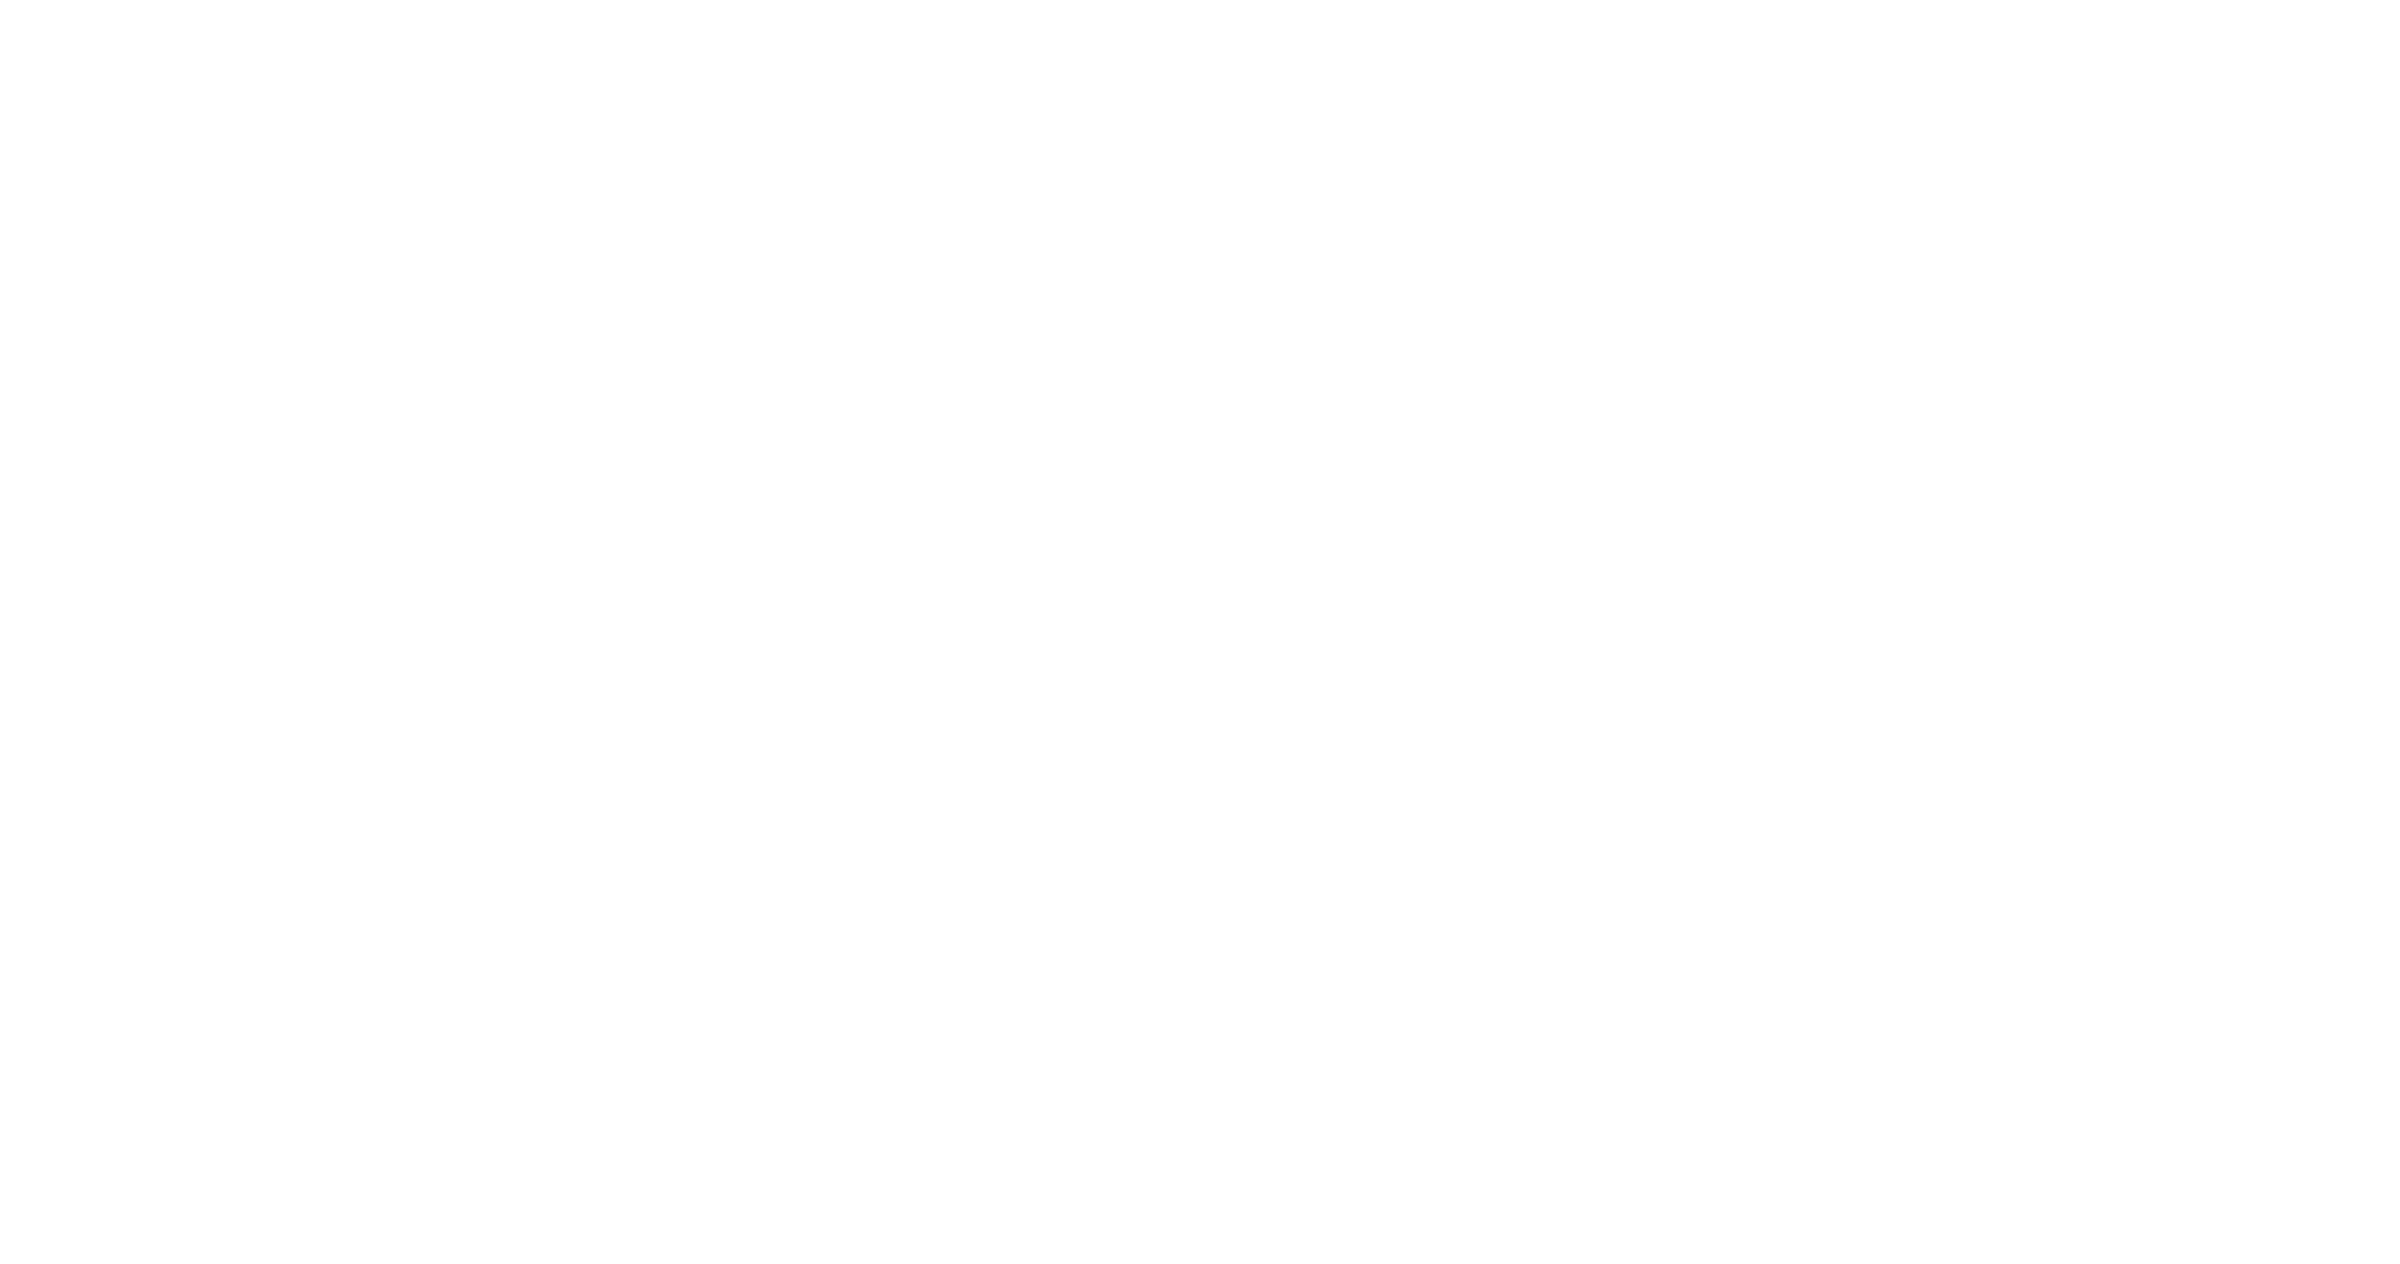 Nordstrom Rack Logo PNG Transparent & SVG Vector - Freebie Supply